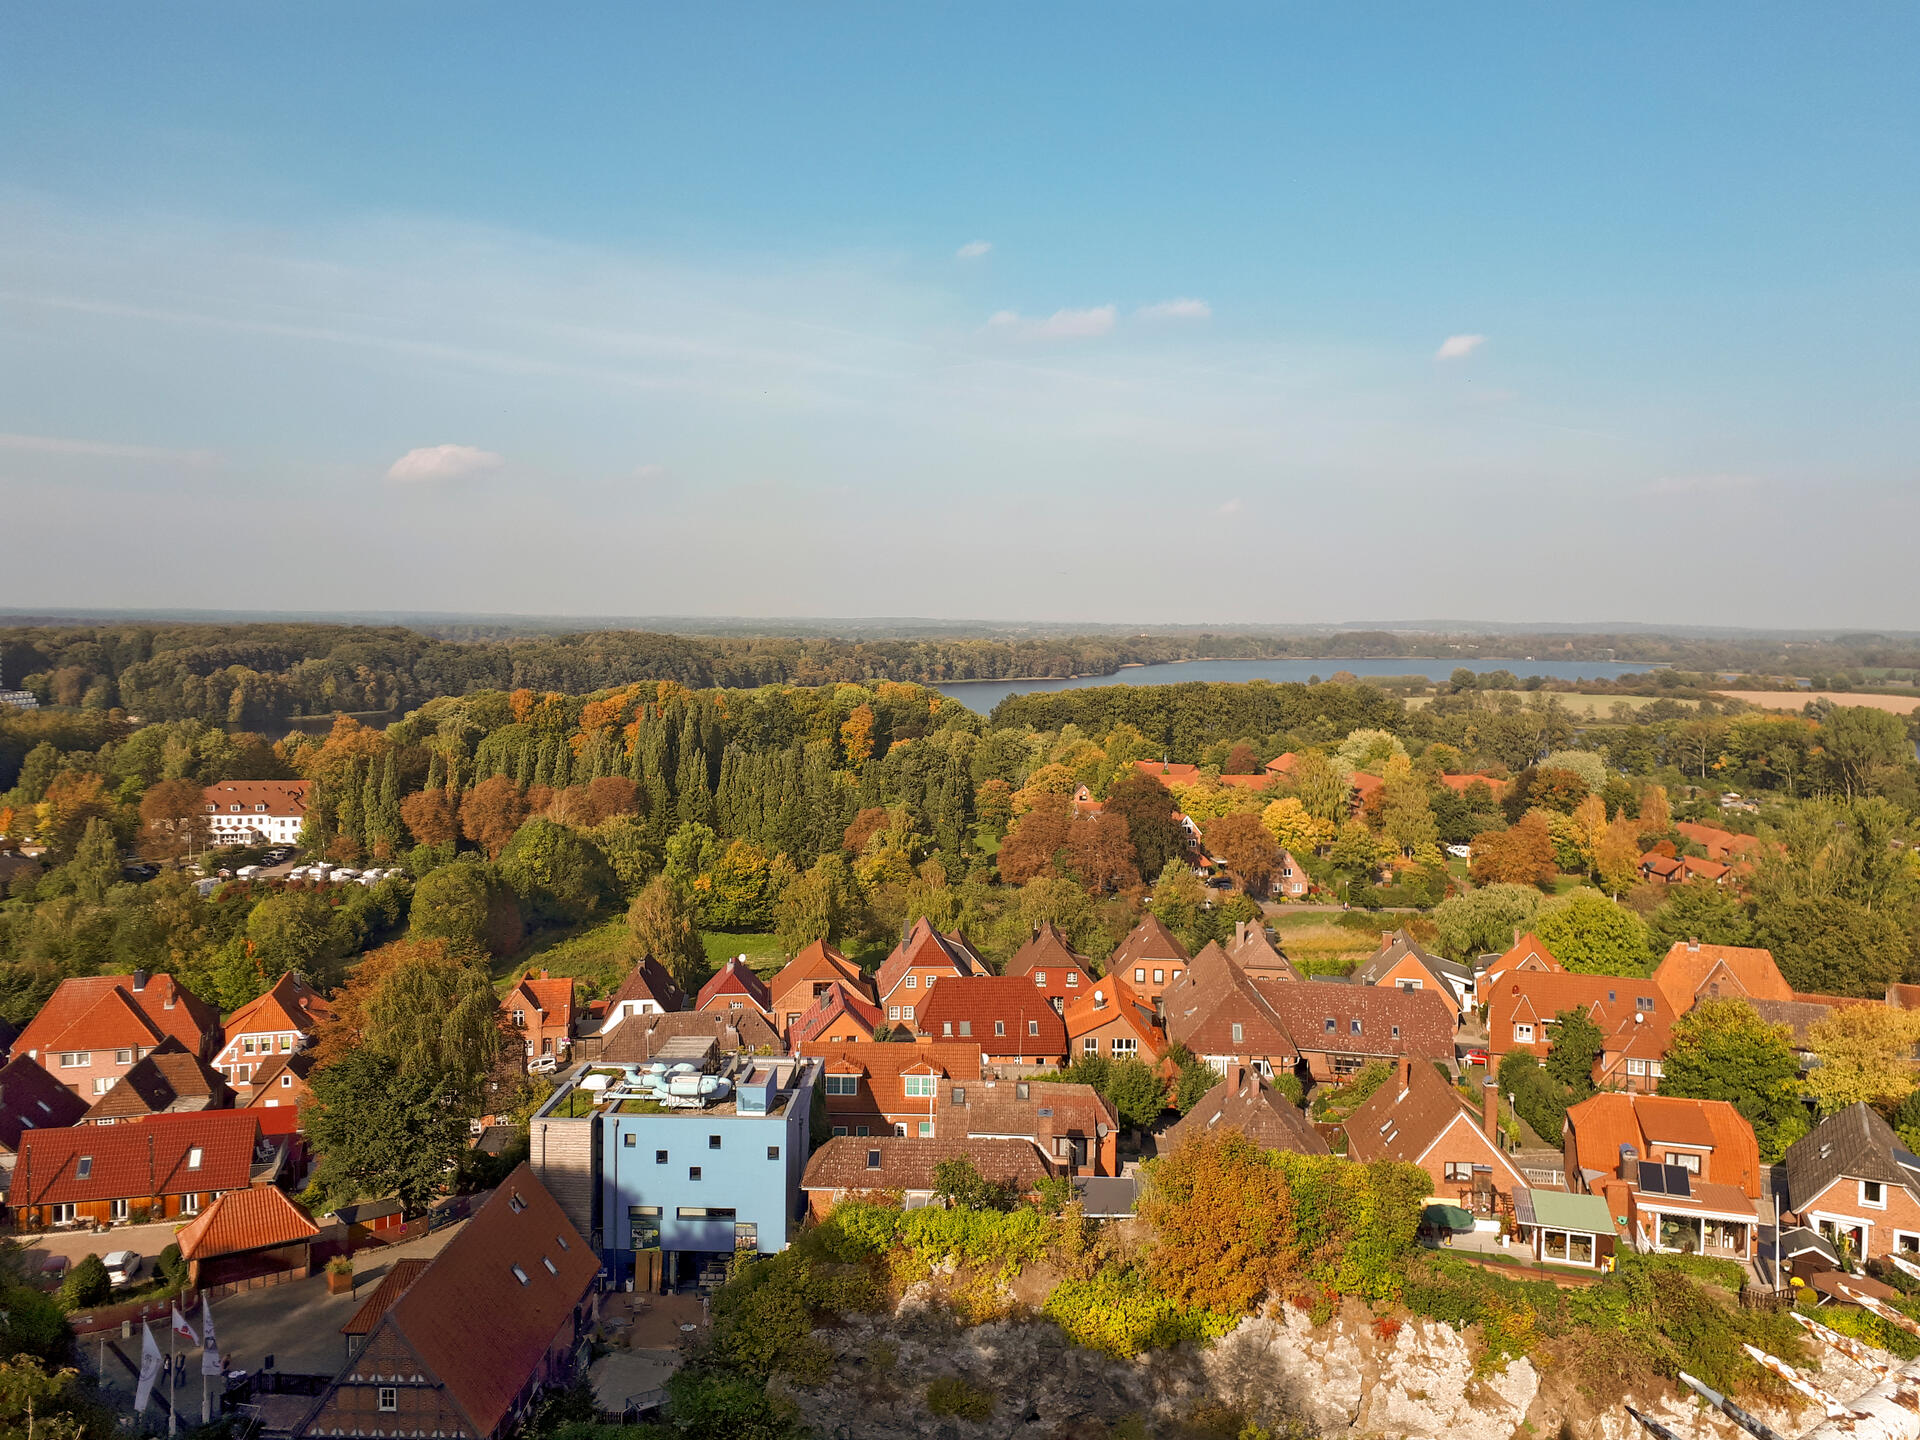 Blick vom Kalkberg auf die Altstadt von Bad Segeberg. Im Hintergrund ist der Große Segeberger See zu sehen.